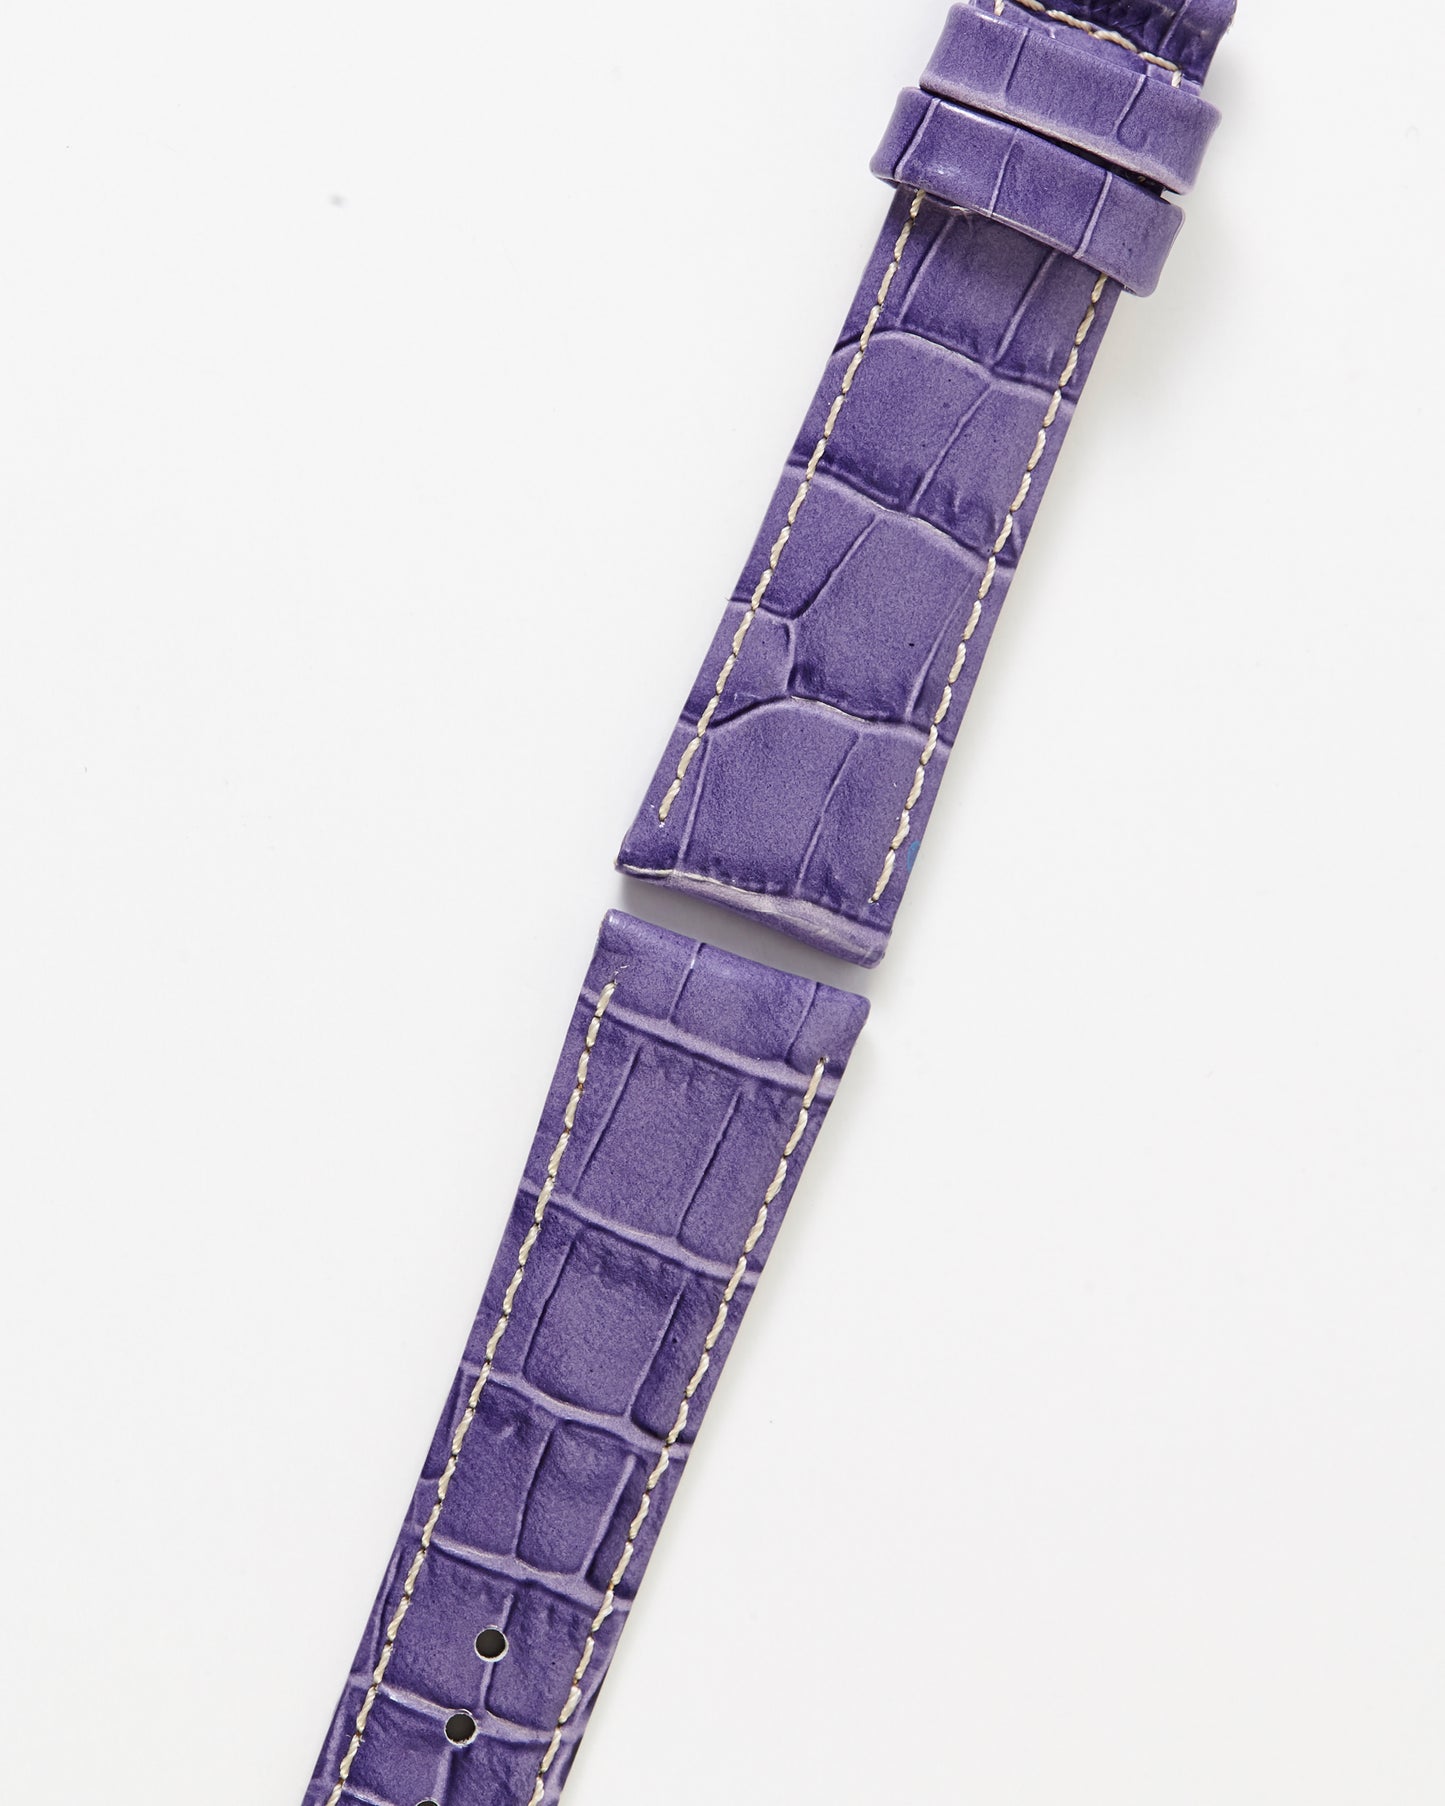 Ecclissi 22875 Purple Alligator Grain Leather Strap 18mm x 16mm